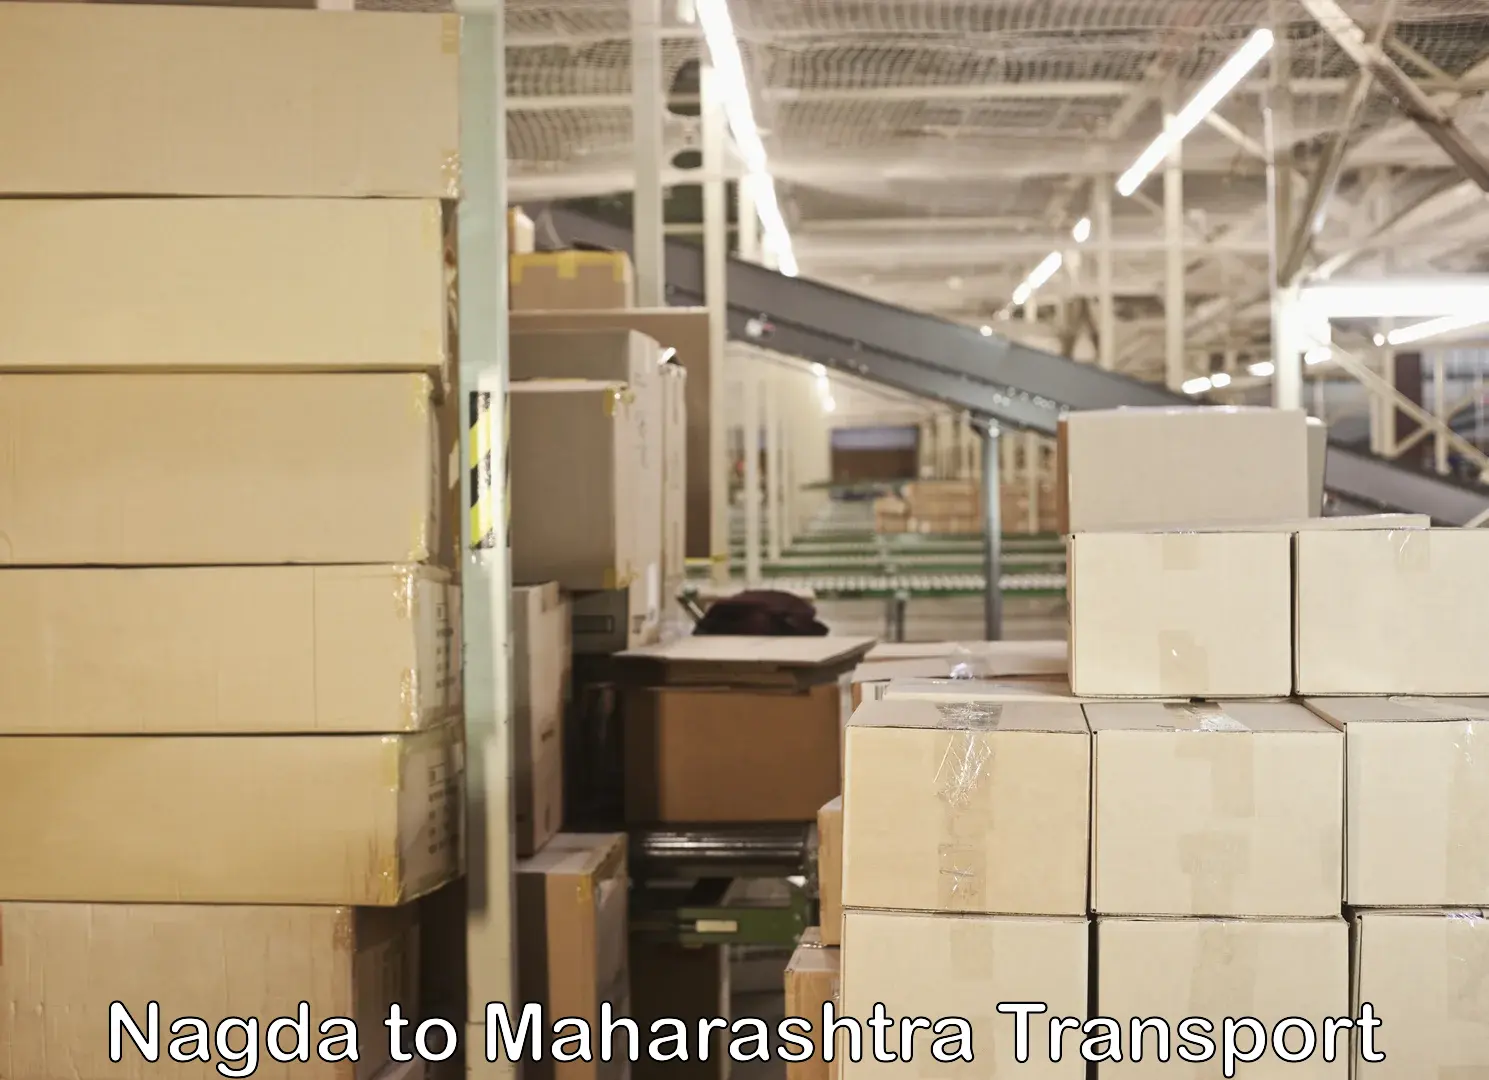 Daily parcel service transport Nagda to Maharashtra